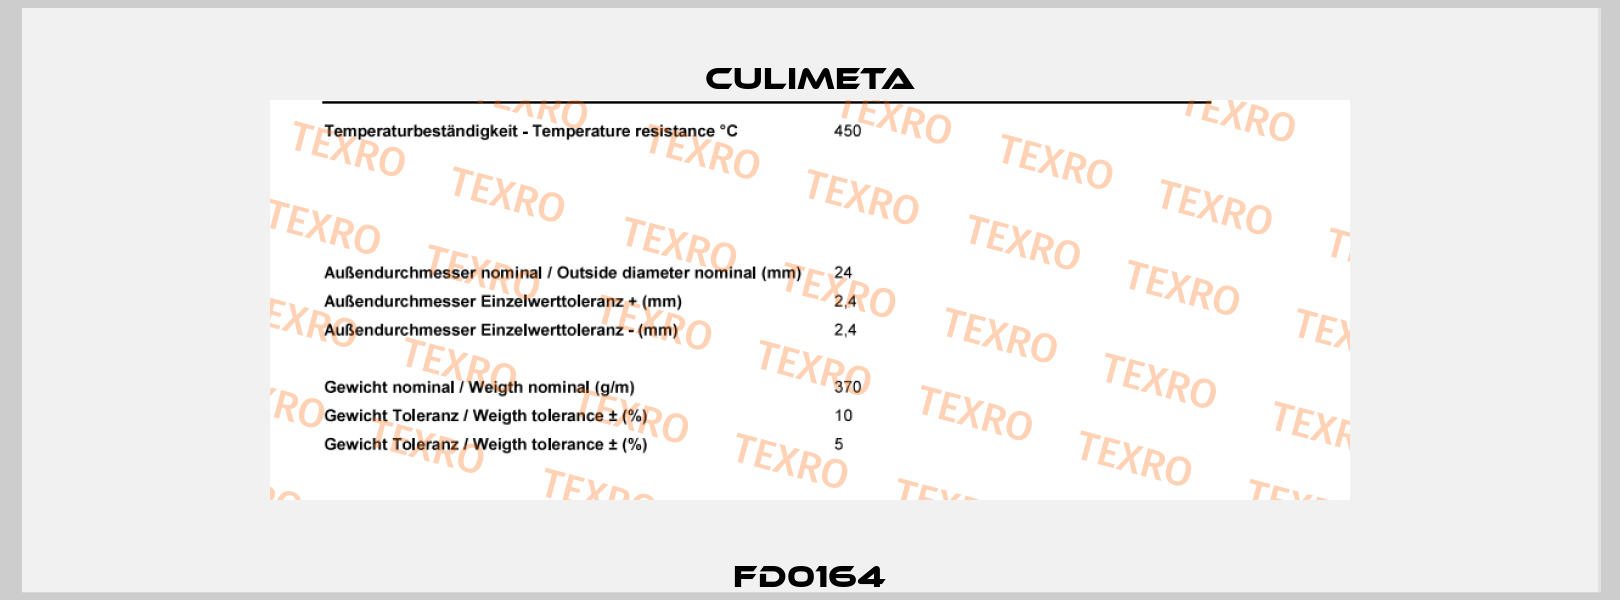 FD0164 Culimeta